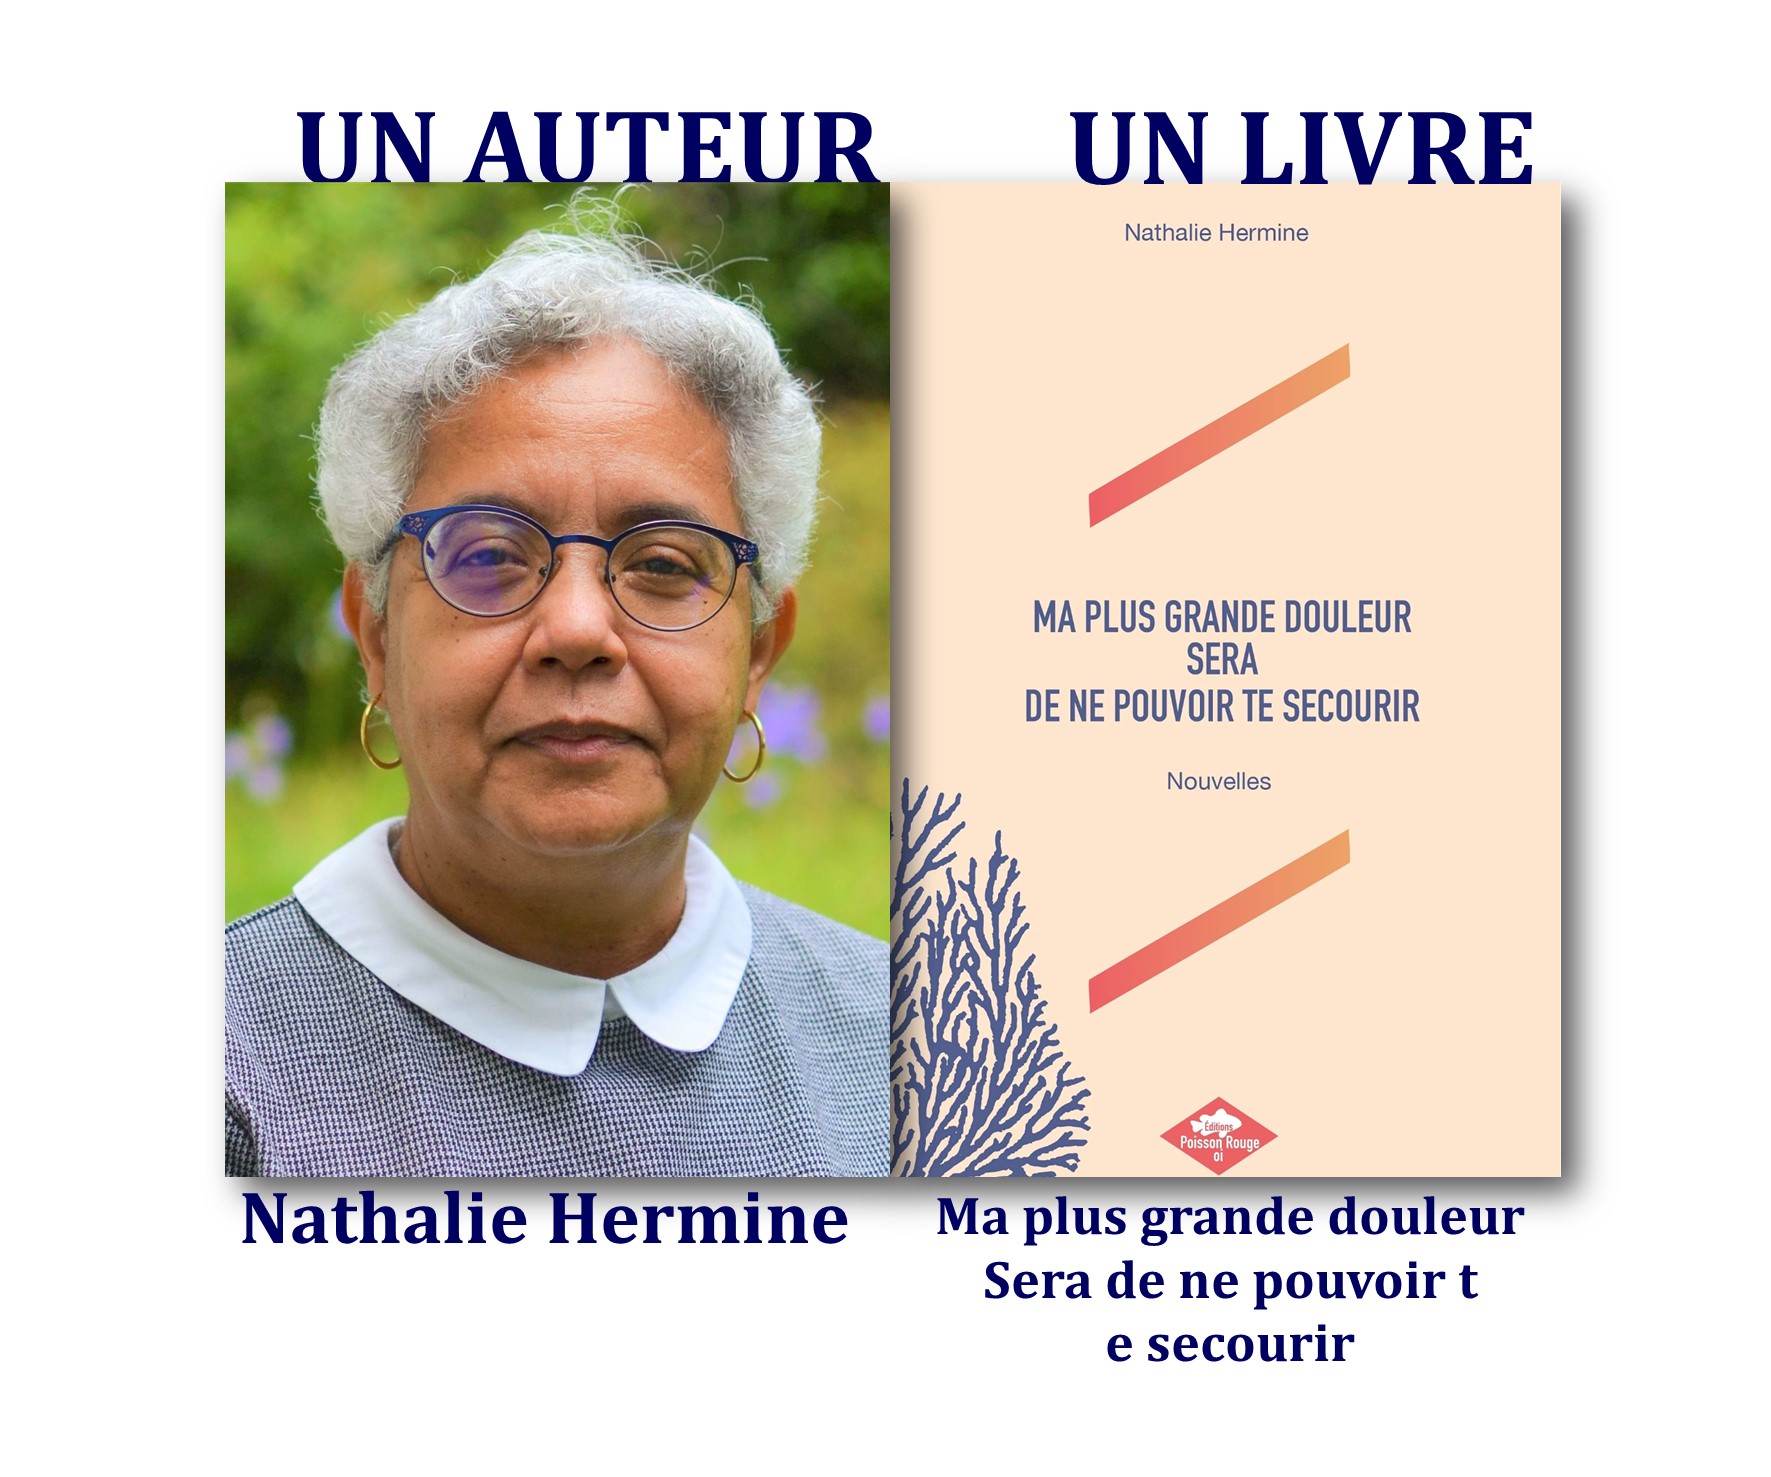 Un auteur, un livre : "Ma plus grande douleur sera de ne pouvoir te secourir", de Nathalie Hermine